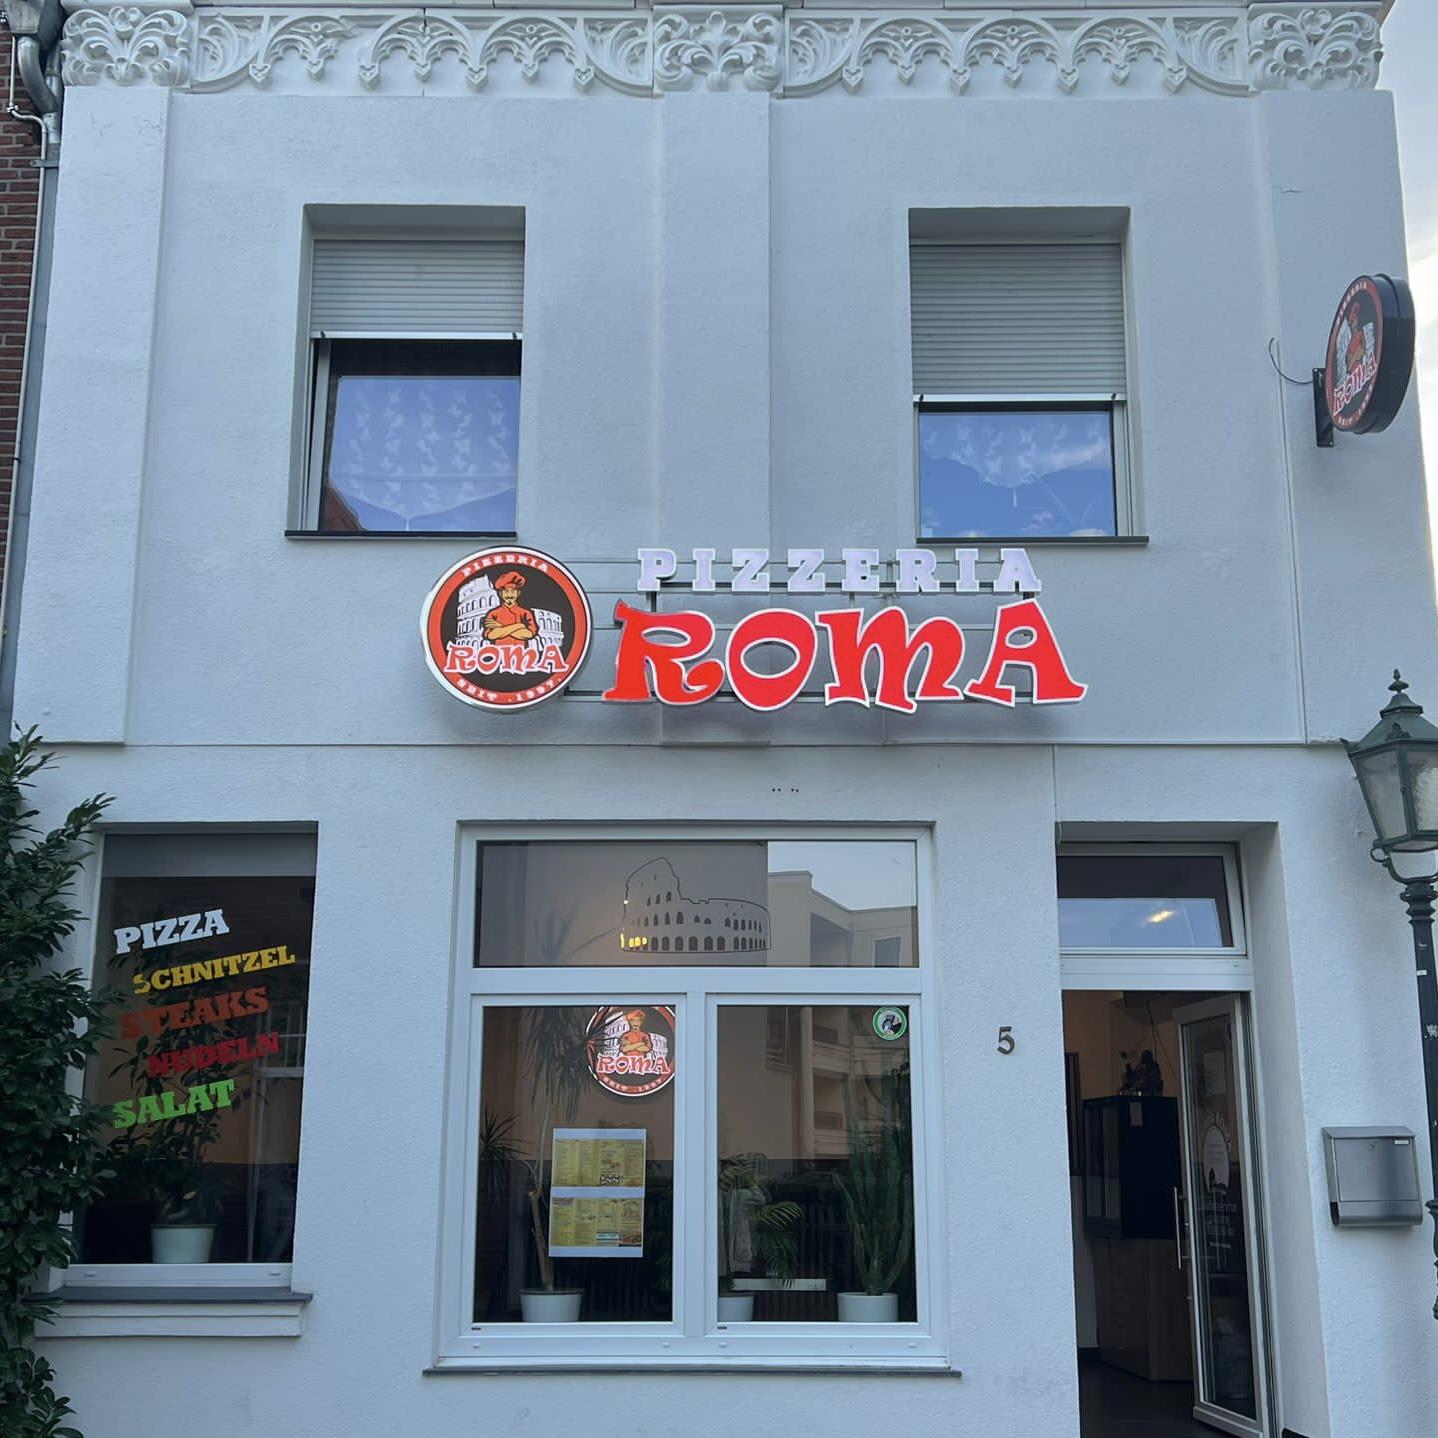 Restaurant "Pizzeria Roma -" in Goch